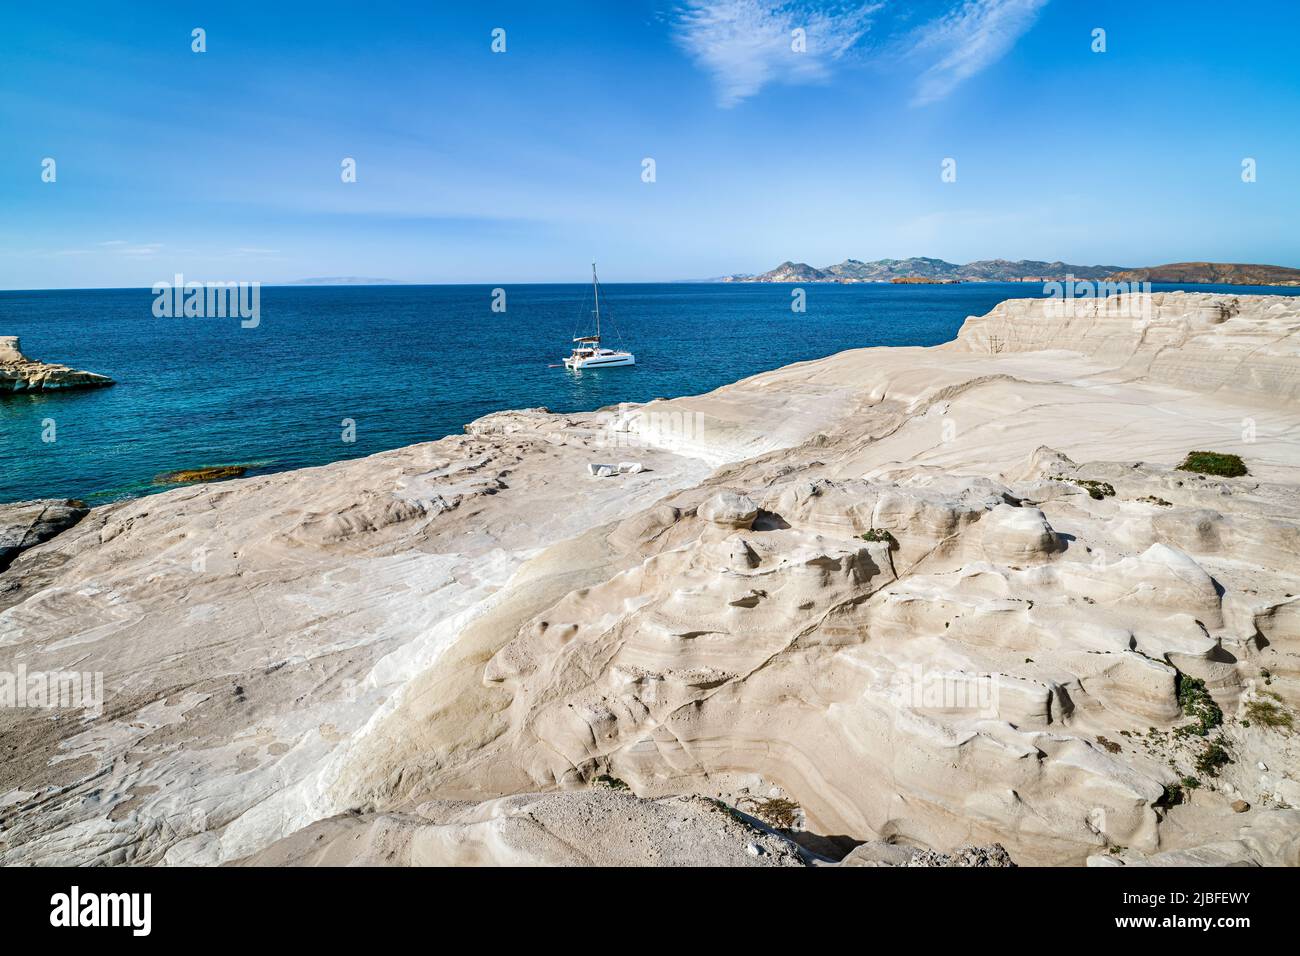 Einzigartige weiße Felsen von Sarakiniko Strand, Ägäis, Insel Milos, Griechenland. Keine Menschen, einsames Segelboot, leere Klippen, Sommersonne, klares Meerwasser Stockfoto